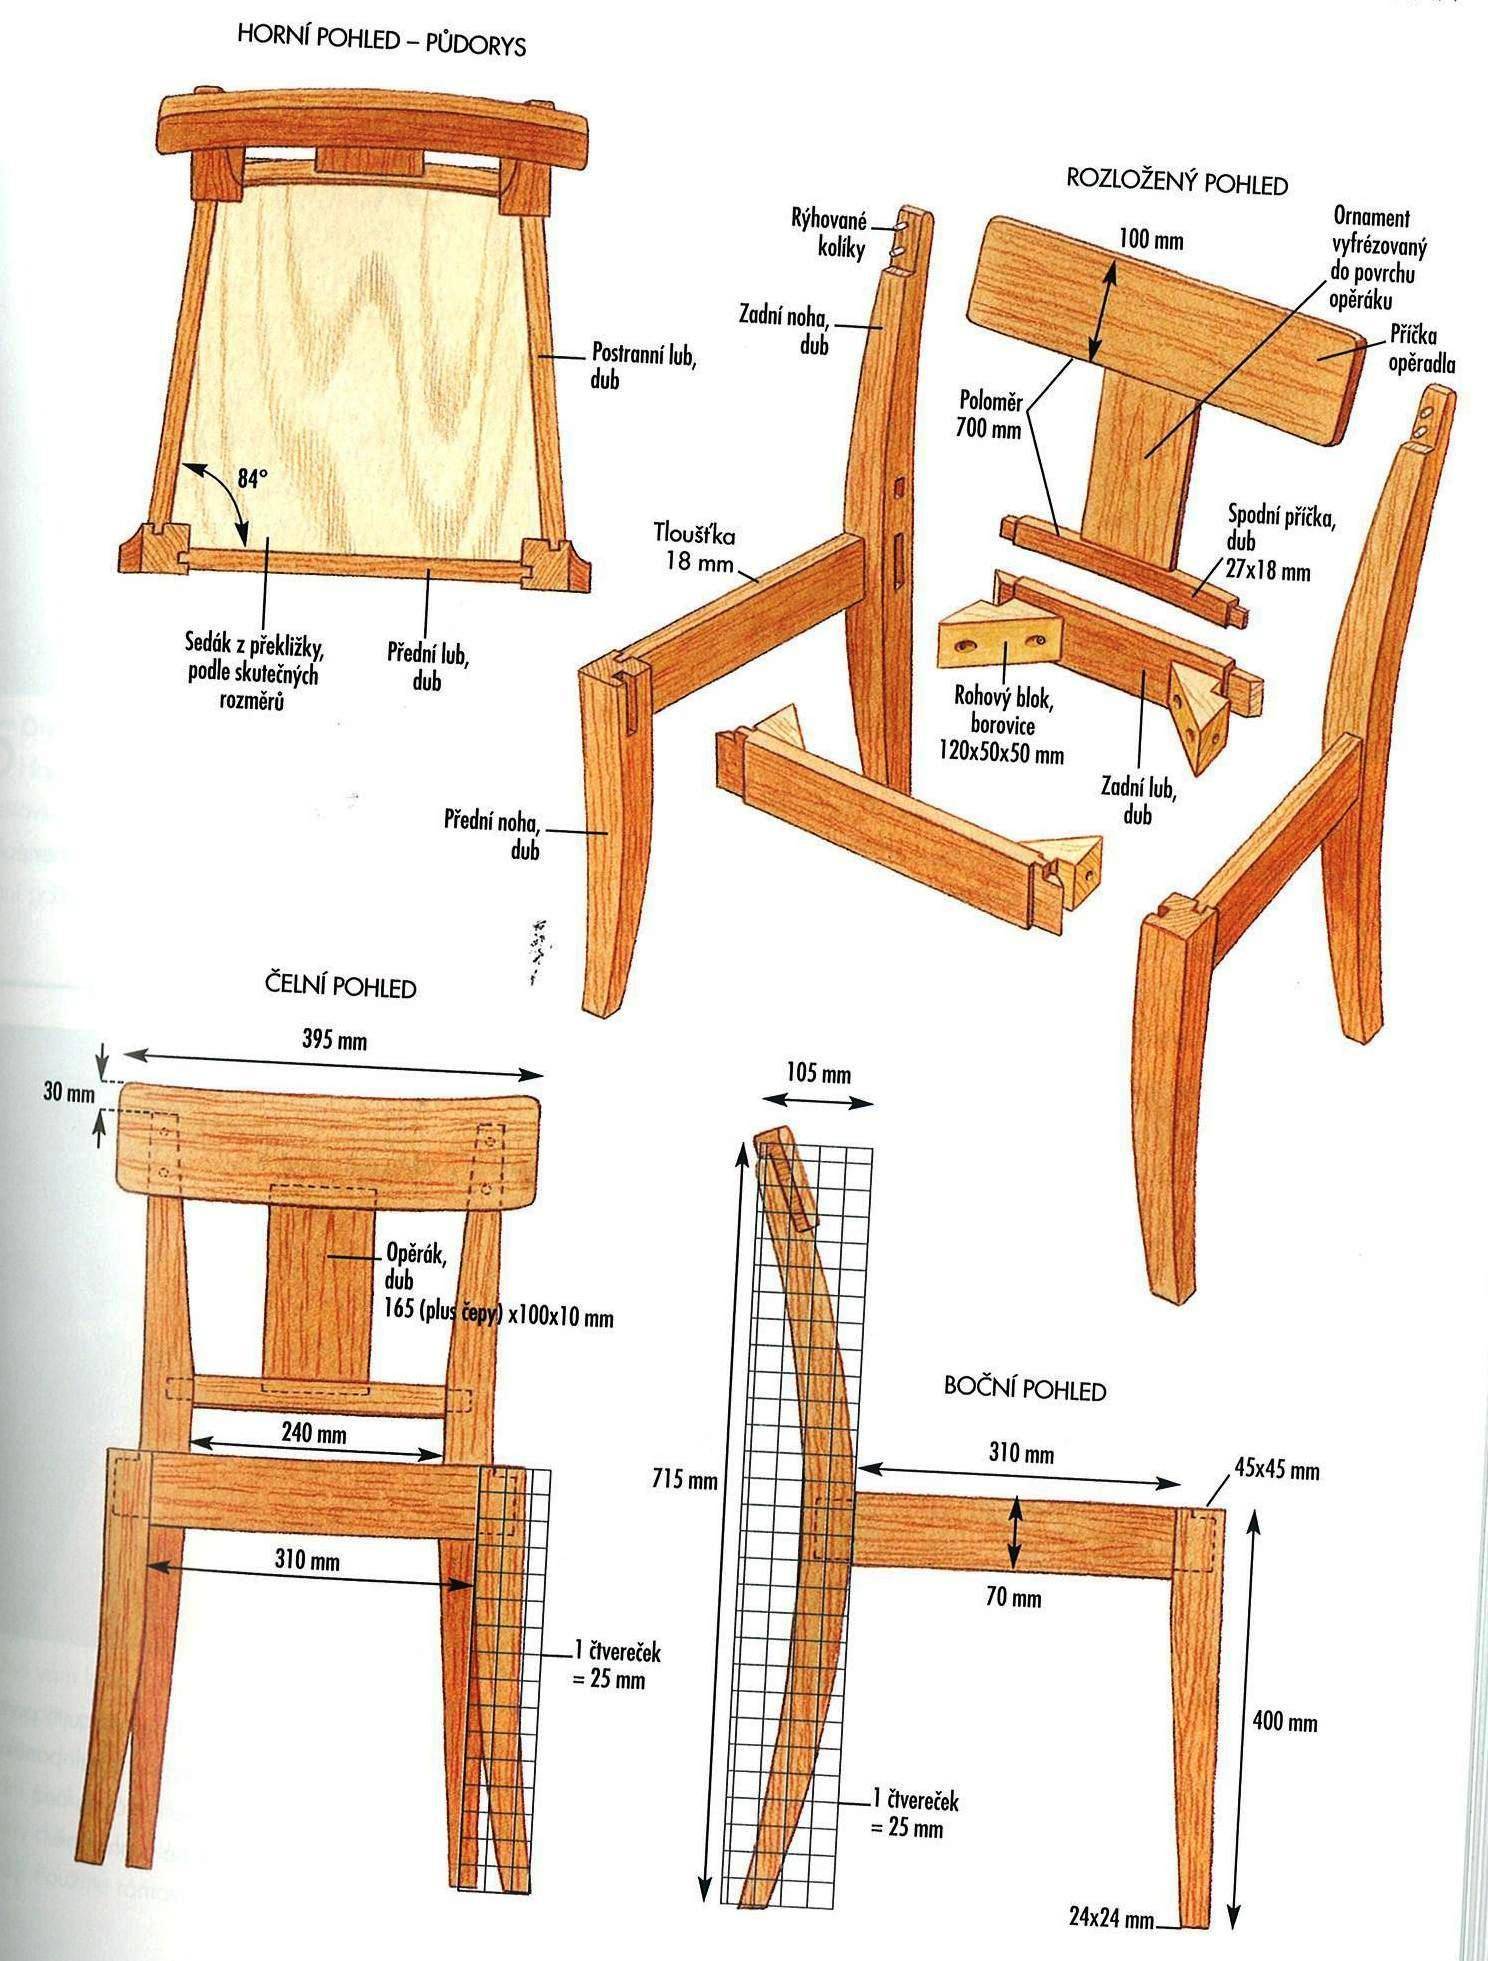 Чертёж стула из дерева со спинкой с размерами